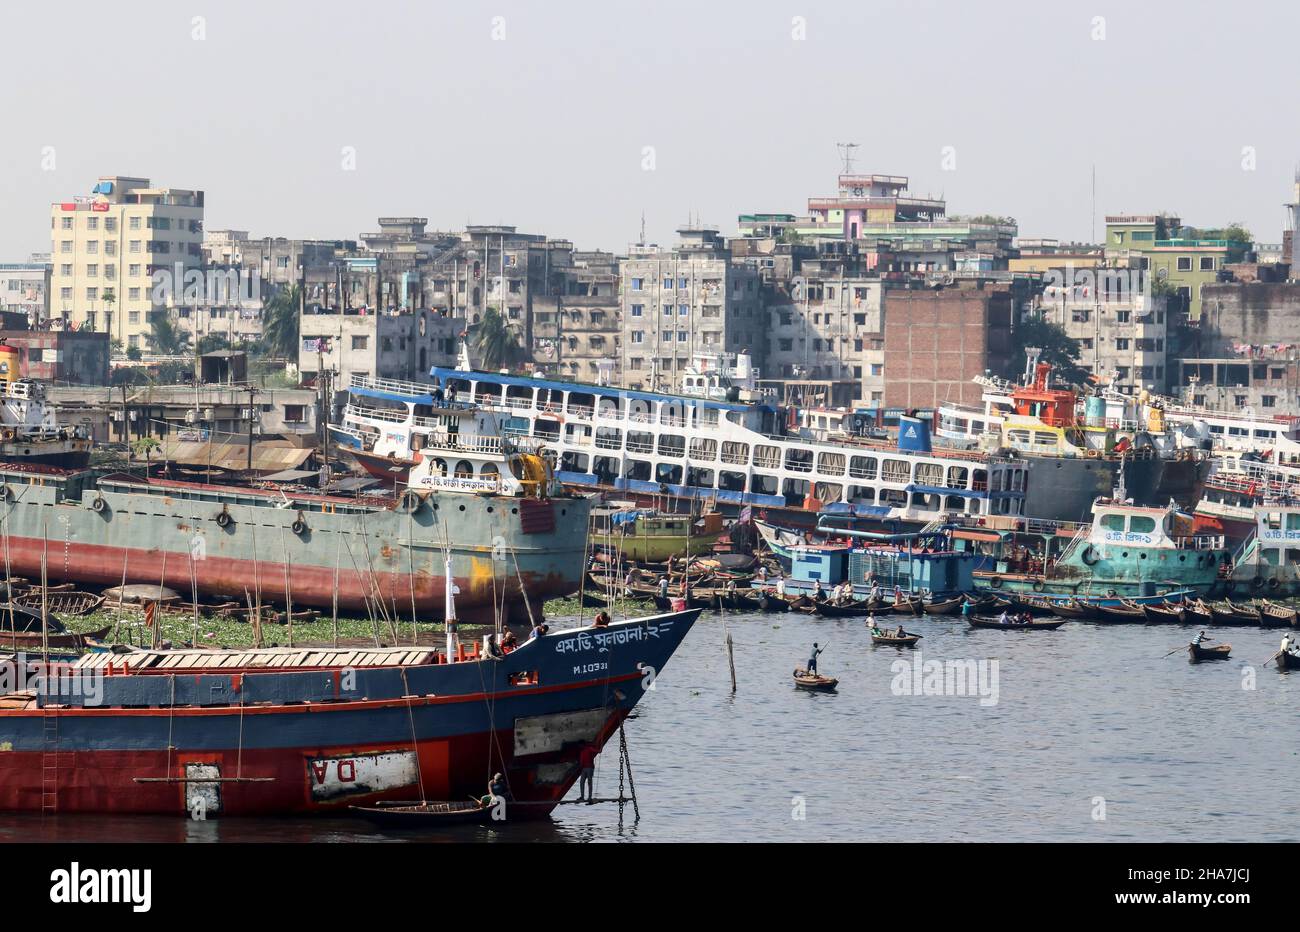 Dhaka, Bangladesh : il fiume Buriganga scorre vicino a Dhaka. I cantieri lungo il fiume sono impegnati nella costruzione e riparazione navale durante tutto l'anno Foto Stock